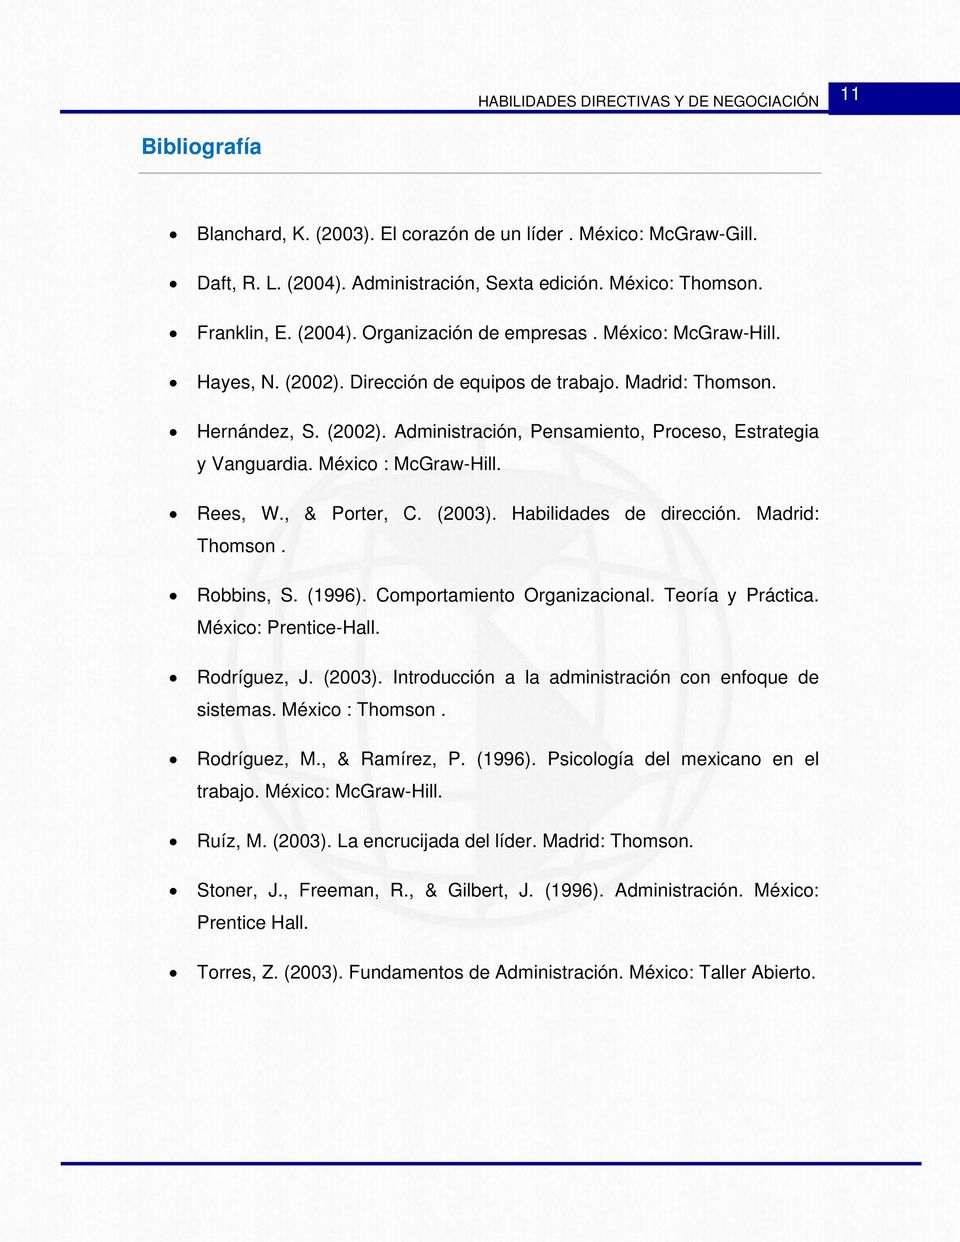 Rees, W., & Porter, C. (2003). Habilidades de dirección. Madrid: Thomson. Robbins, S. (1996). Comportamiento Organizacional. Teoría y Práctica. México: Prentice-Hall. Rodríguez, J. (2003). Introducción a la administración con enfoque de sistemas.